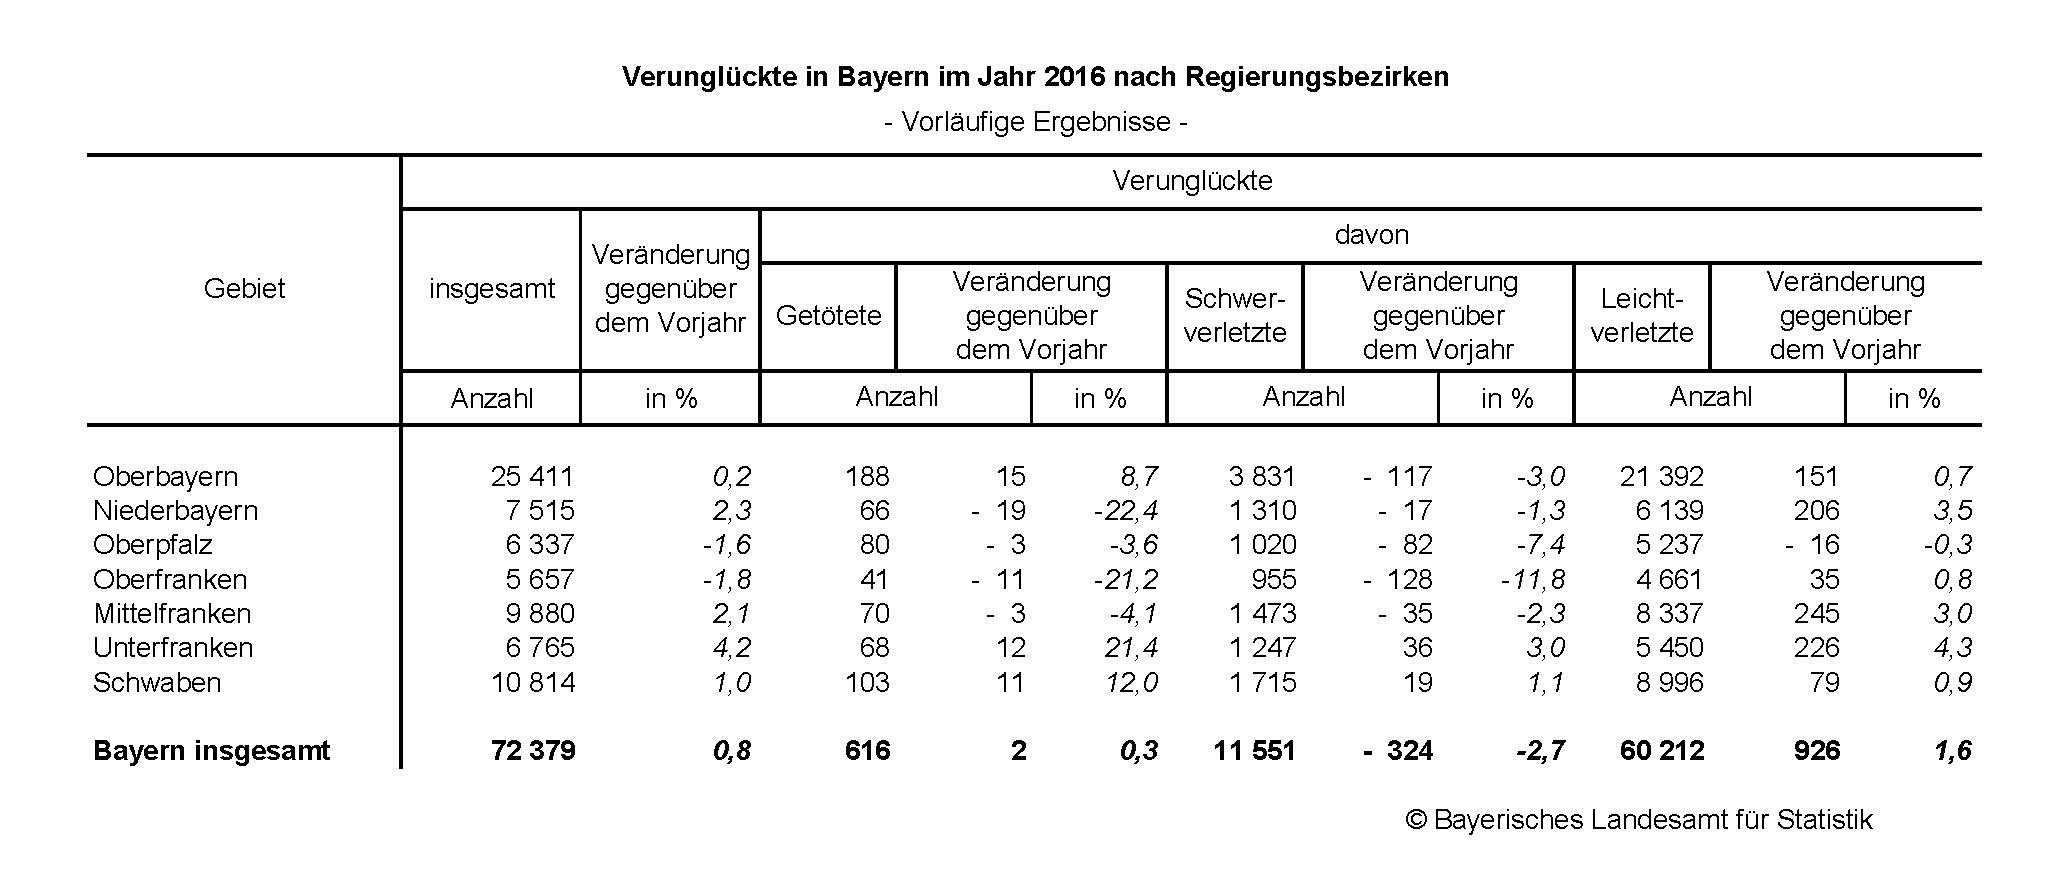 Verunglückte in Bayern im Jahr 2016 nach Regierungsbezirken 